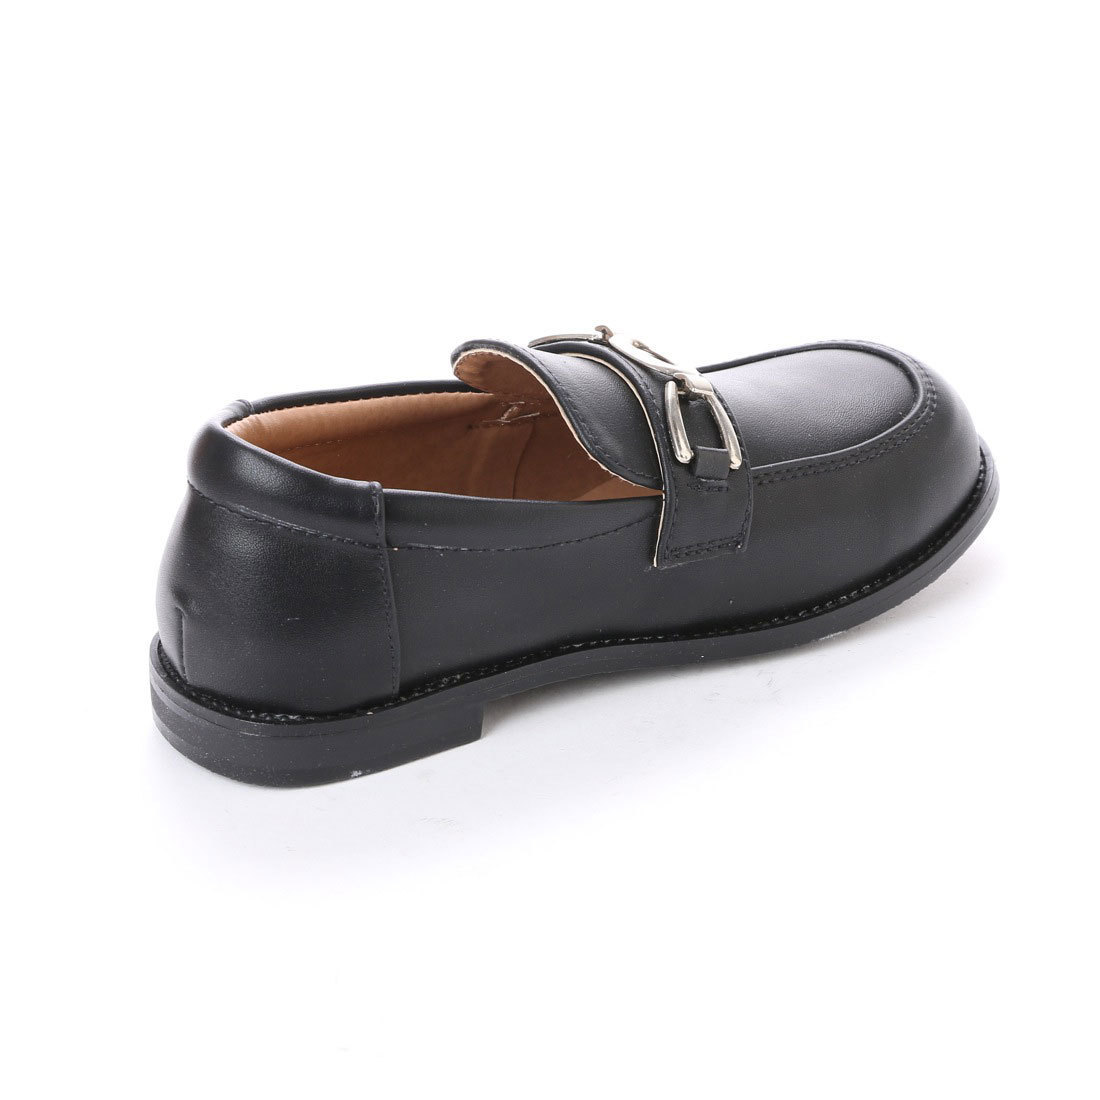 [ новый товар не использовался ] Kids формальная обувь 16.0cm чёрный 17714